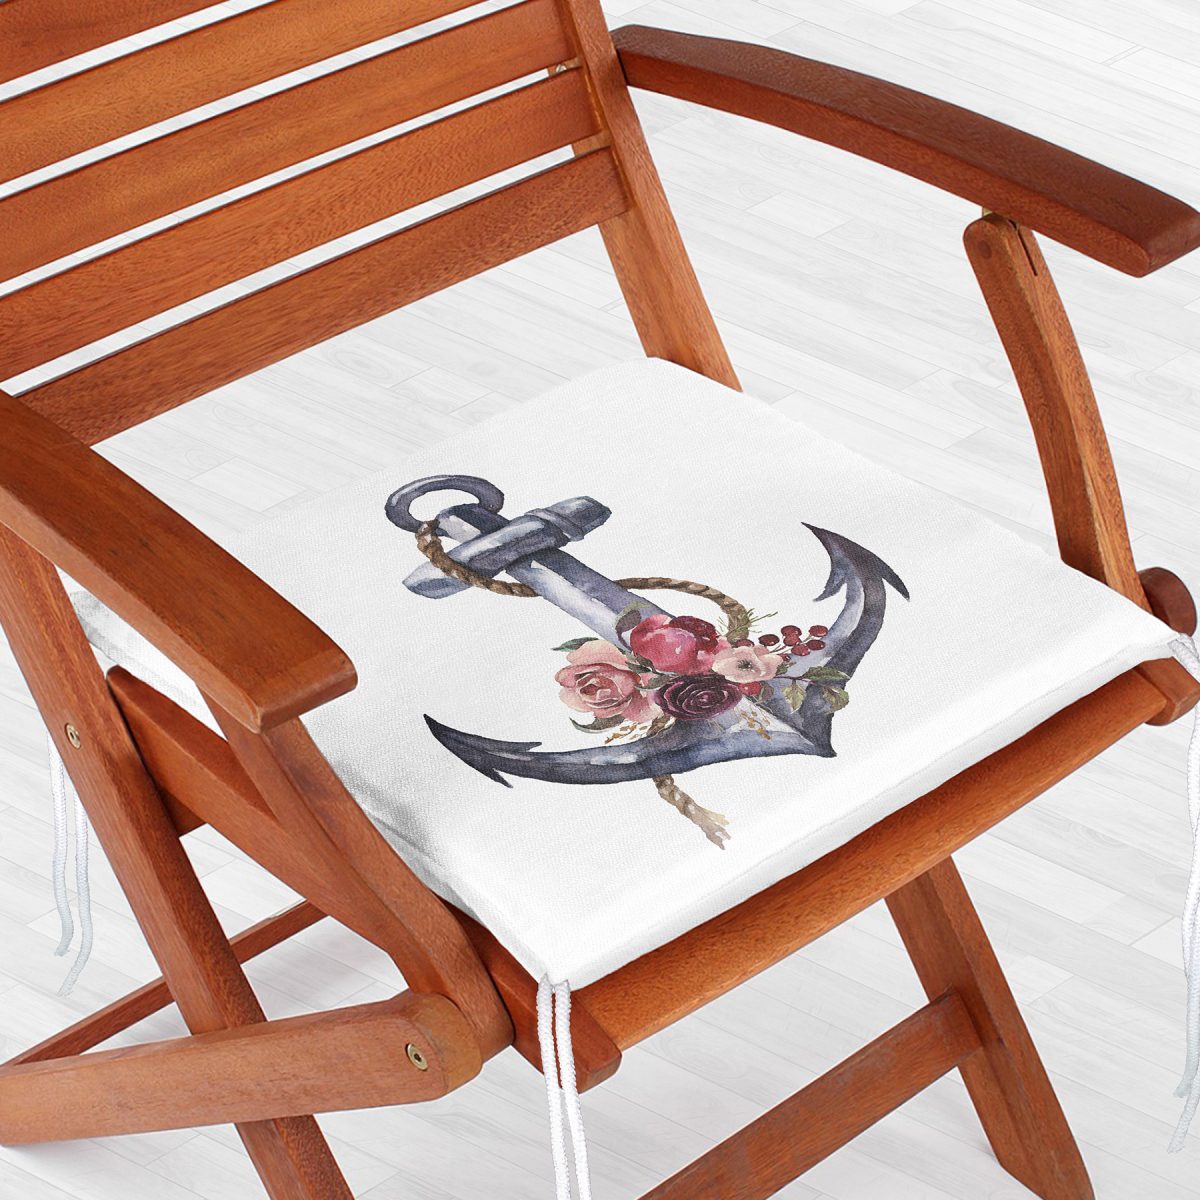 Beyaz Zeminde Sade Çapa Tasarımlı Dijital Baskılı Fermuarlı Sandalye Minderi Realhomes